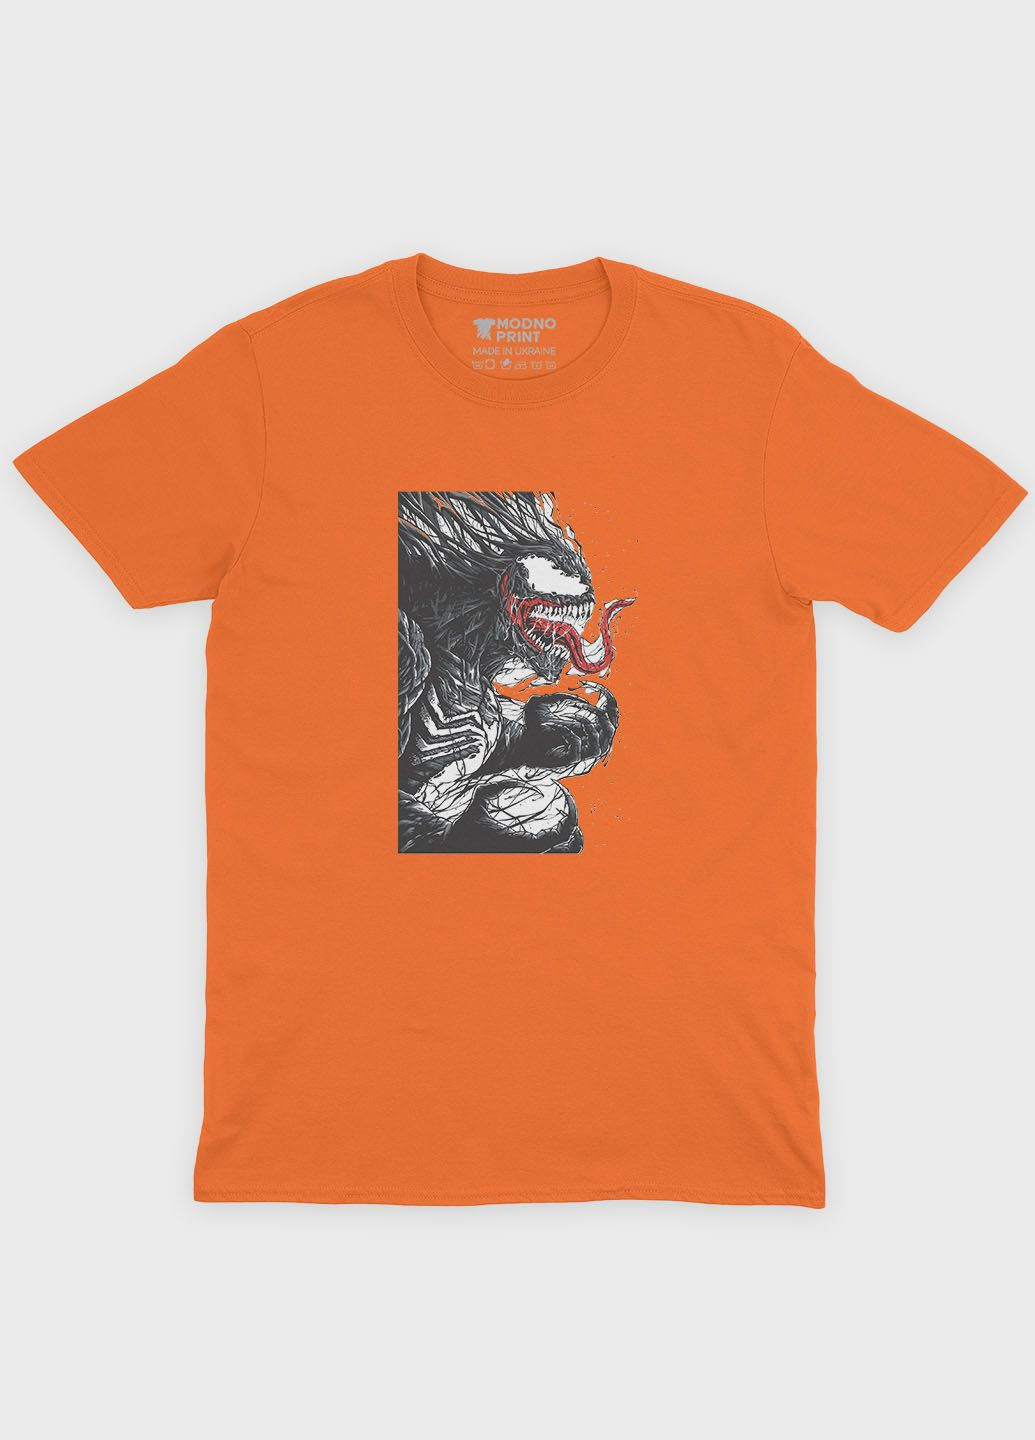 Оранжевая демисезонная футболка для мальчика с принтом супервора - веном (ts001-1-ora-006-013-004-b) Modno